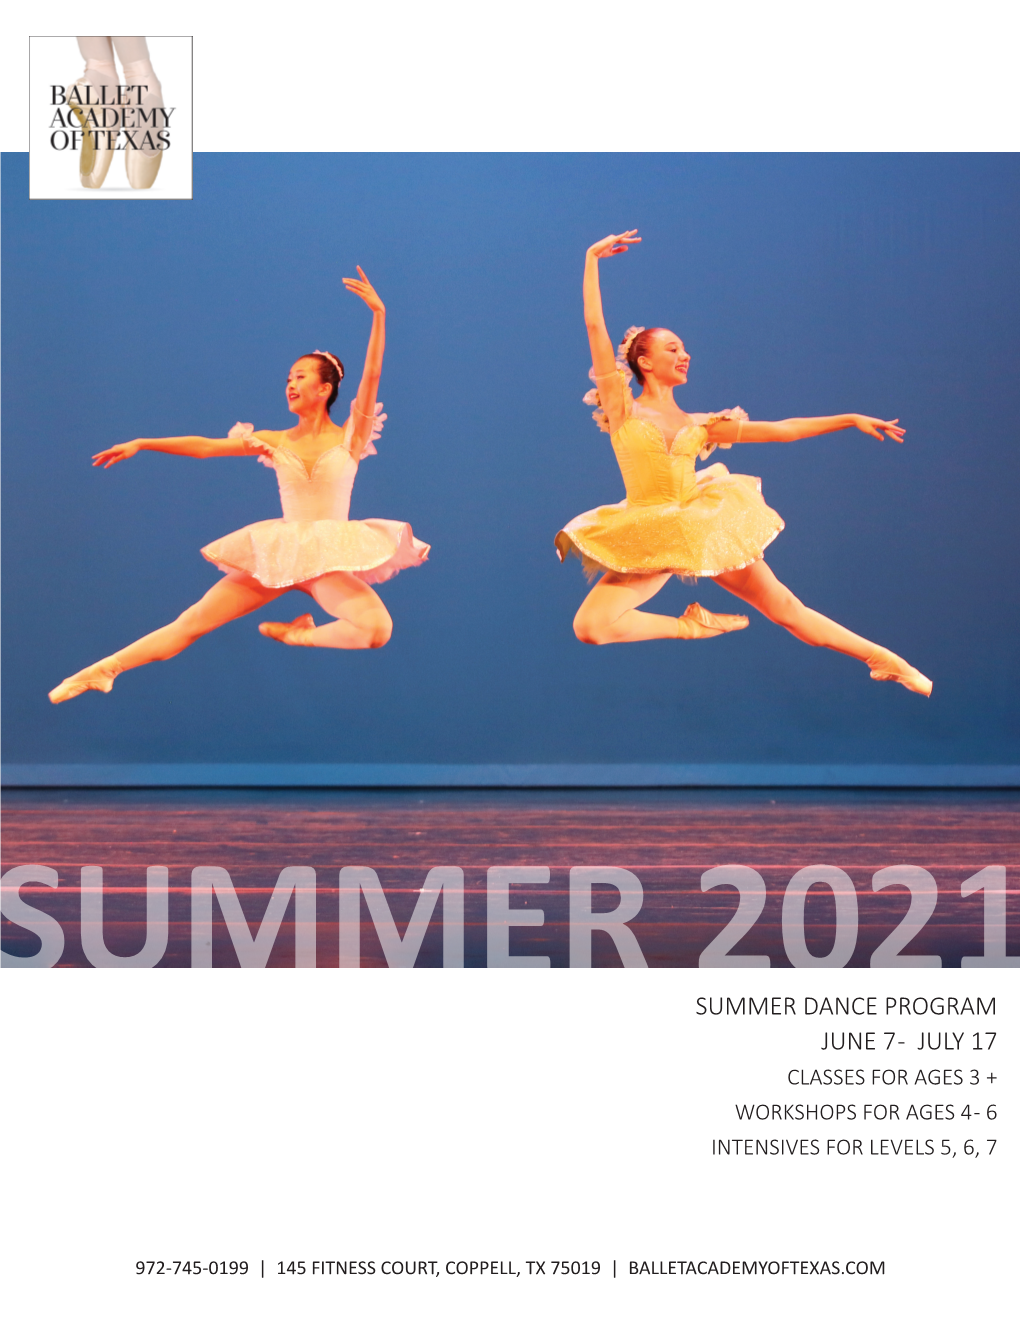 Summer Dance Program June 7 - July 17 Classes for Ages 3 + Workshops for Ages 4 - 6 Intensives for Levels 5, 6, 7